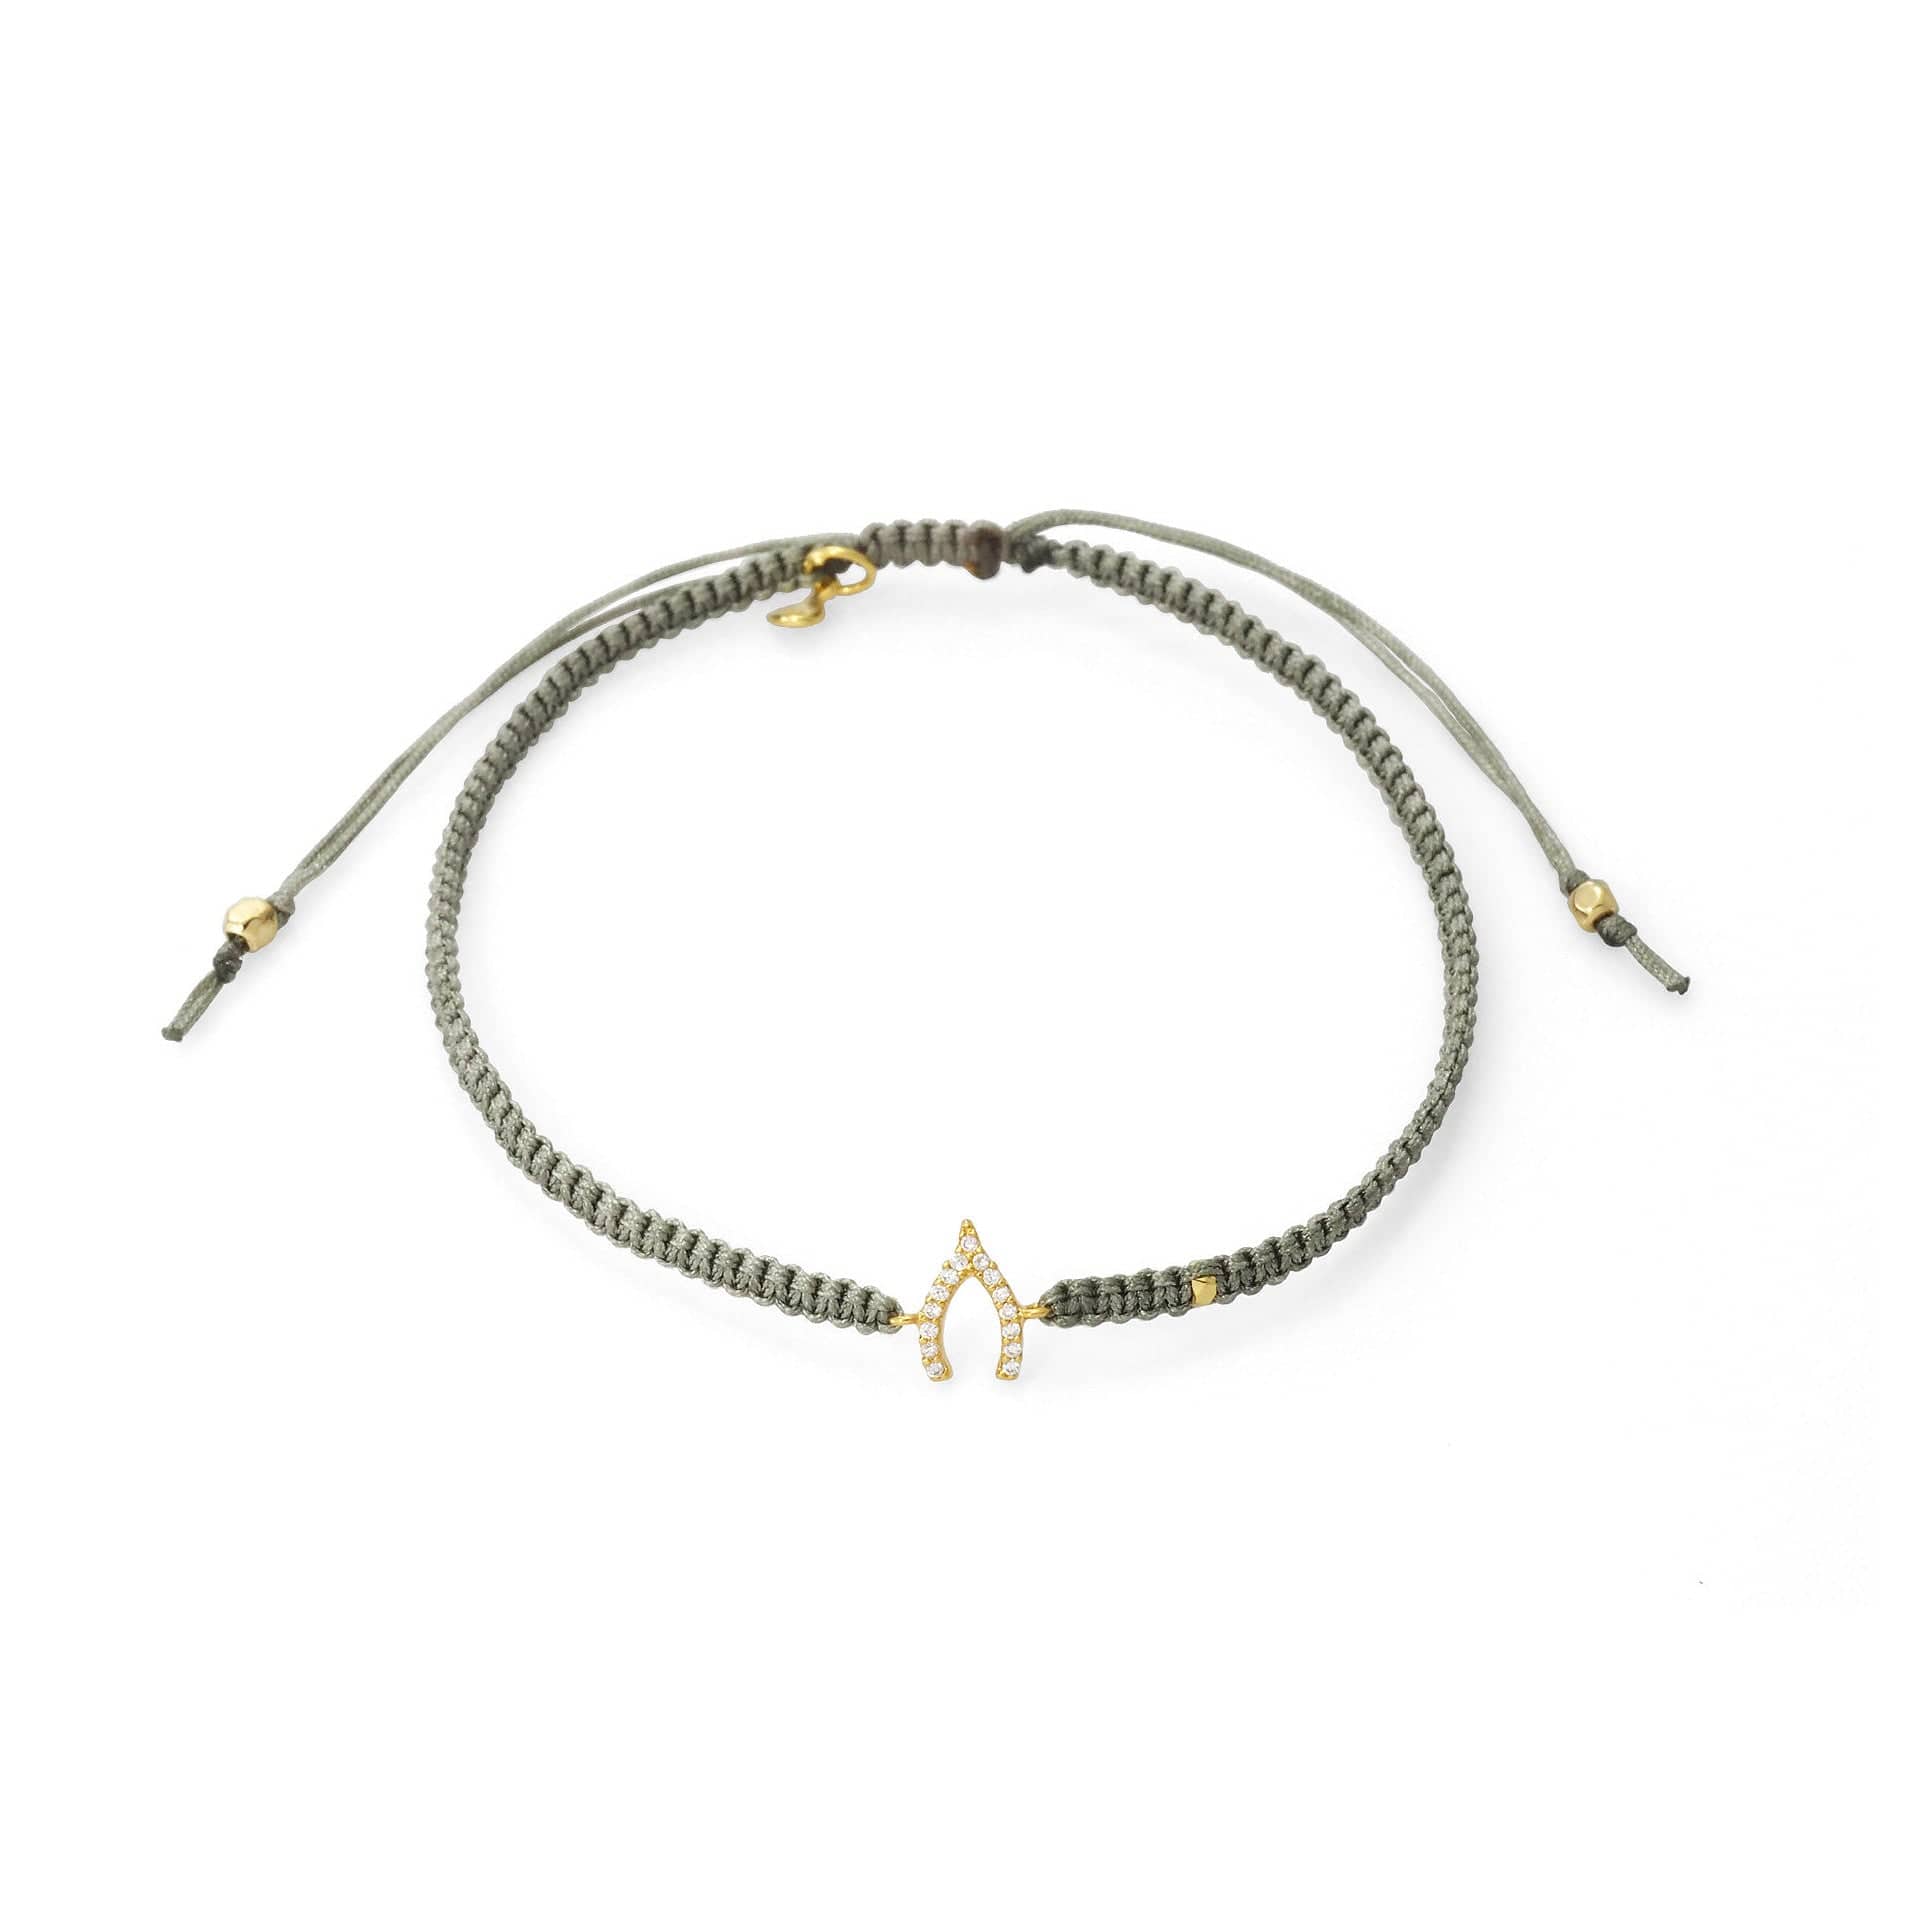 TAI JEWELRY Bracelet GOLD / LIGHT GREY Braided Silk Cord With Mini Wishbone